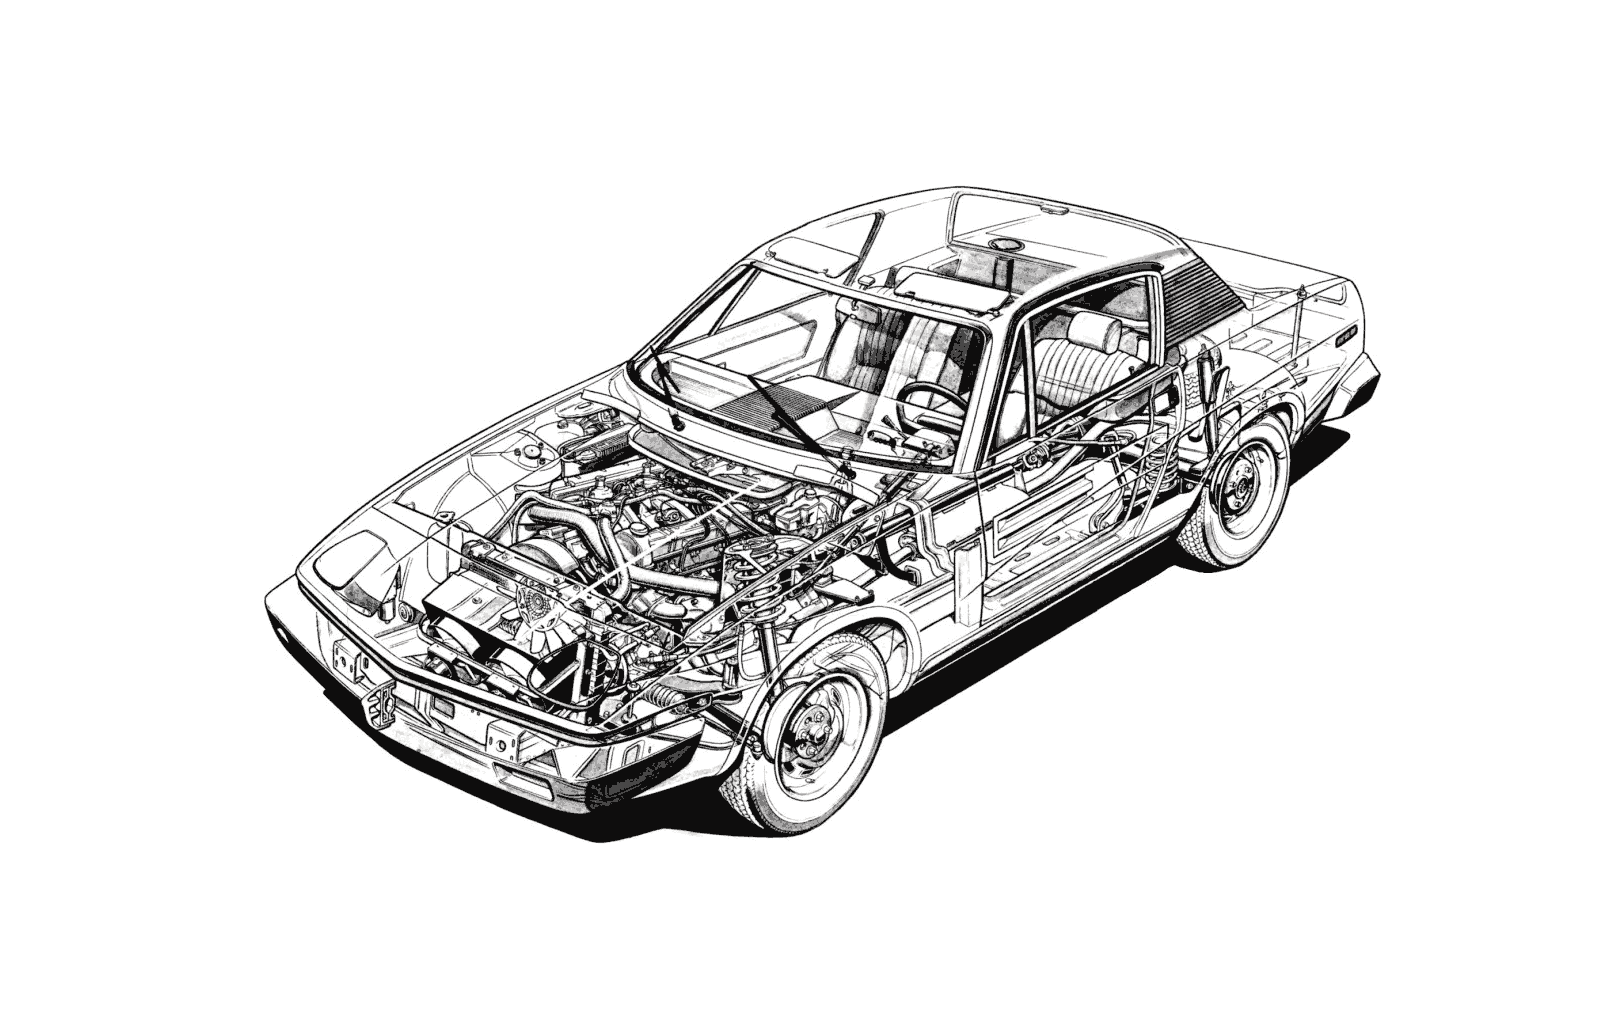 Triumph TR7 cutaway